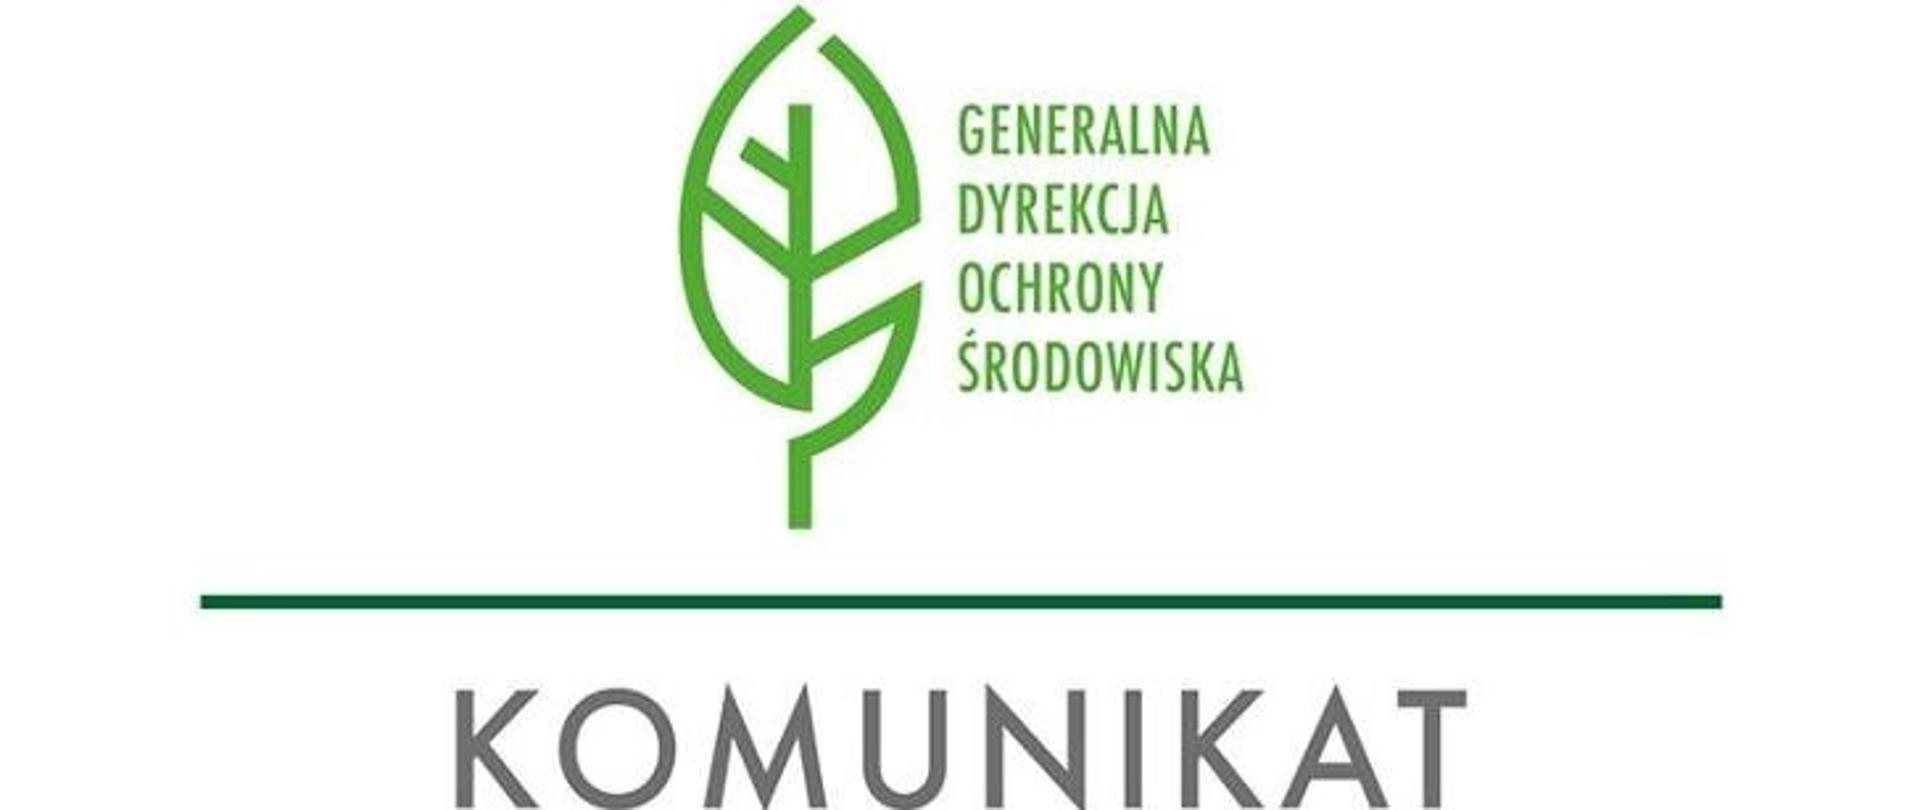 Logo Generalnej Dyrekcji Ochrony Środowiska, pod nim napis komunikat